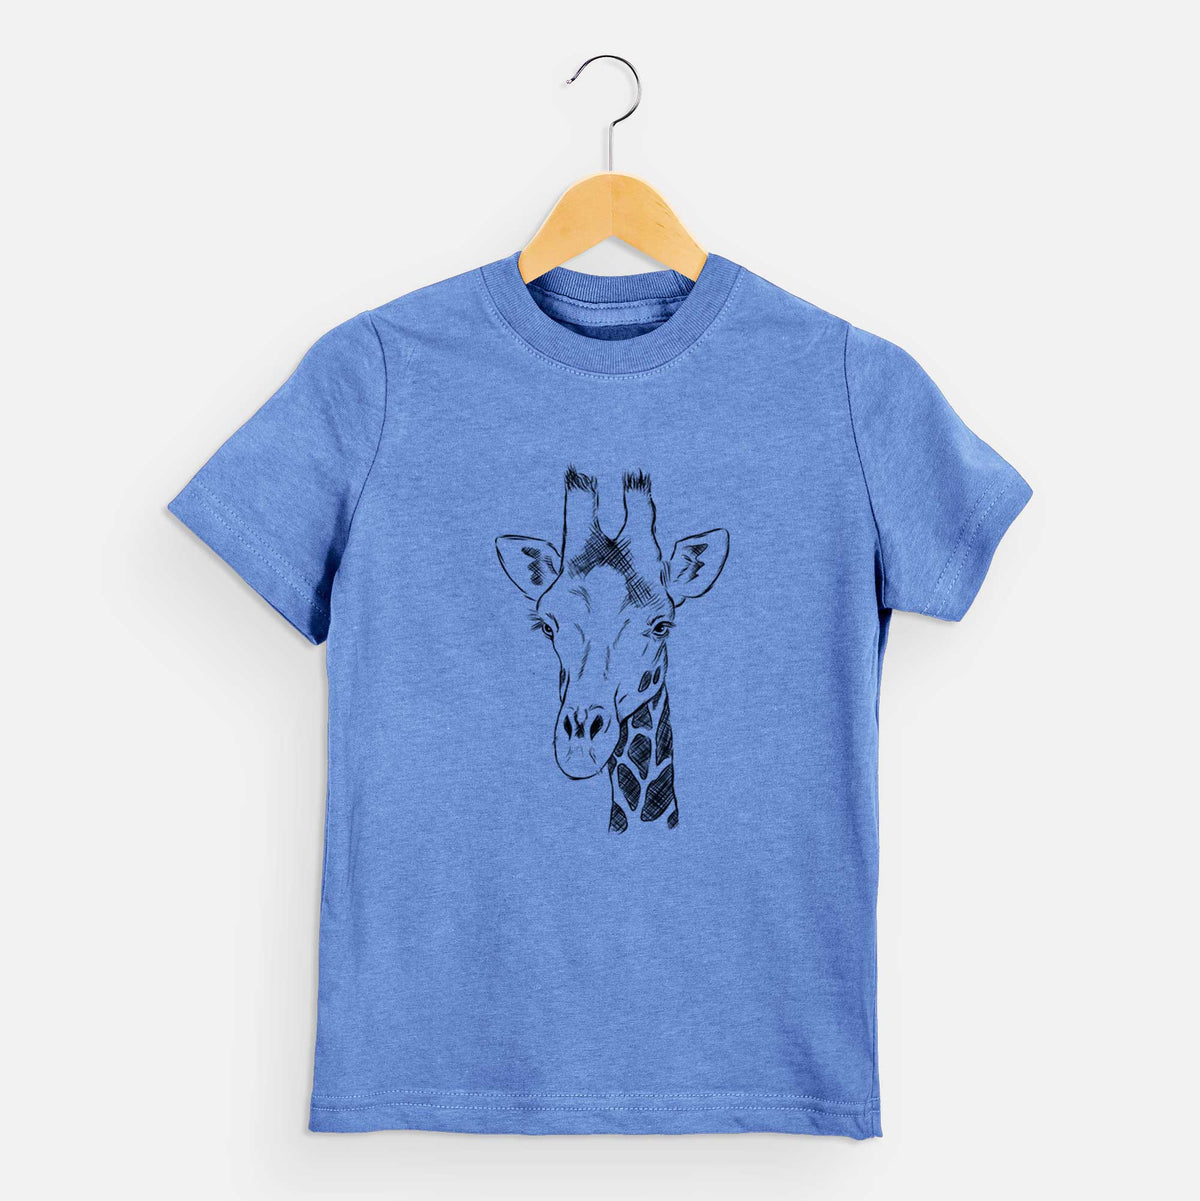 Southern Giraffe - Giraffa giraffa - Kids Shirt